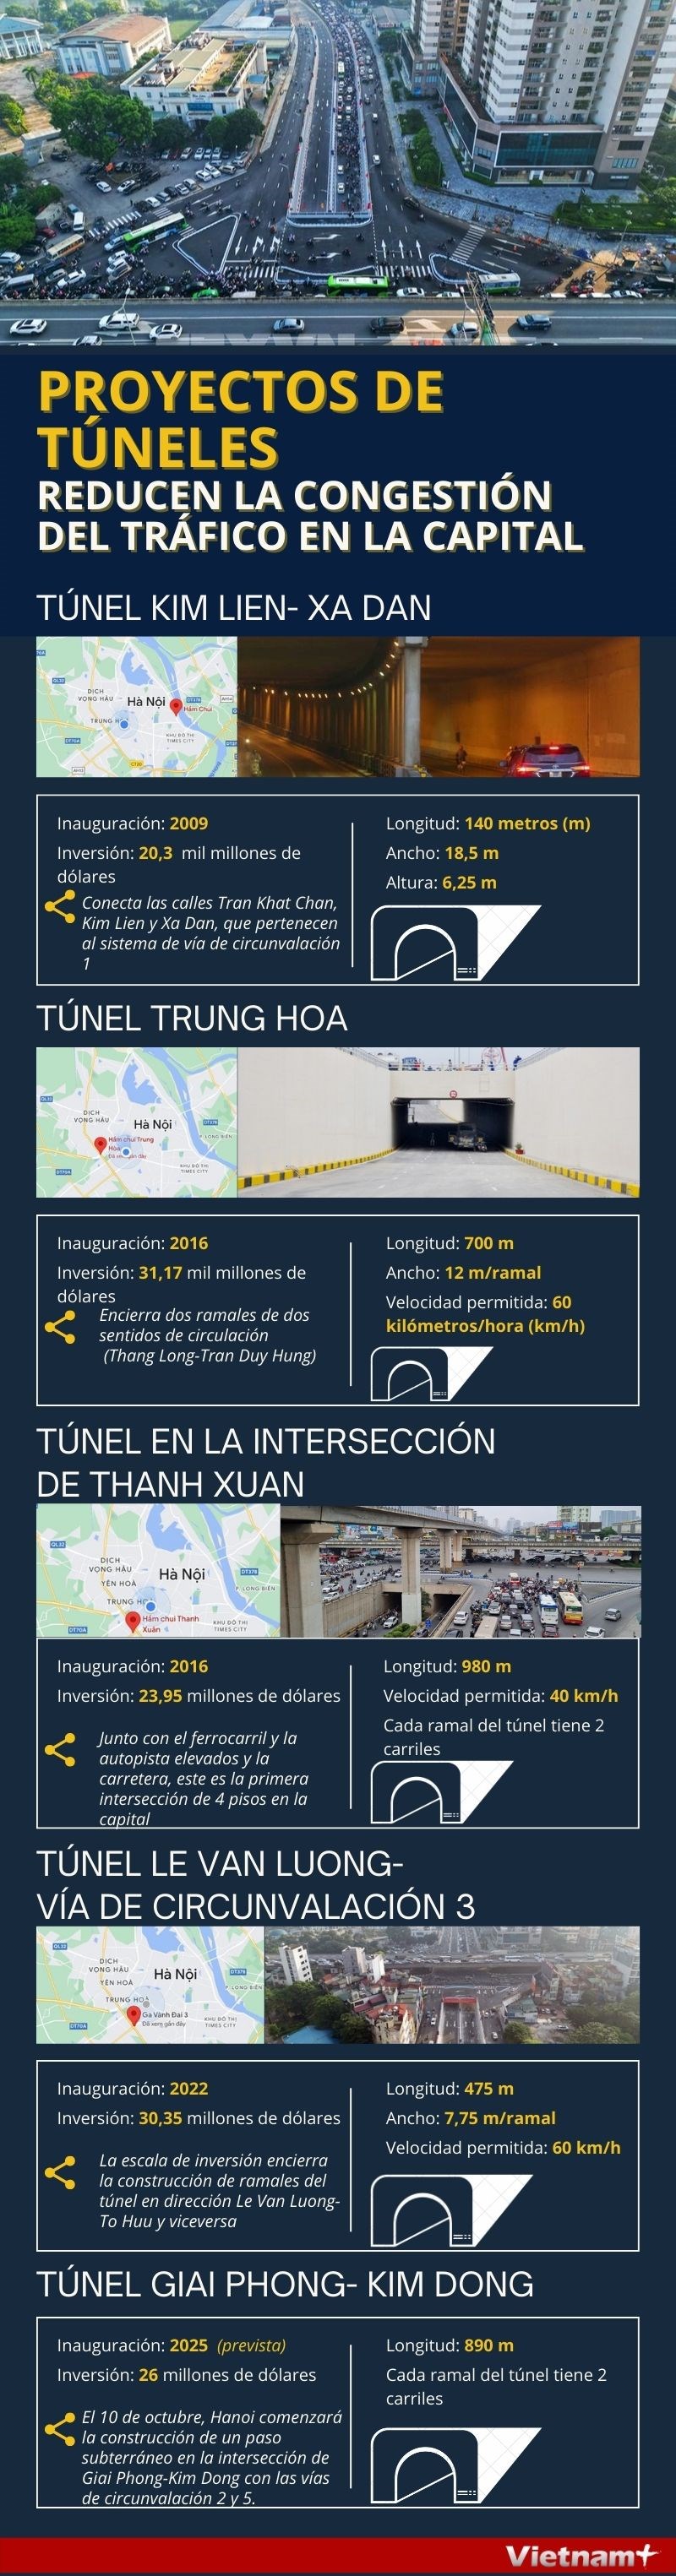 Proyectos de tuneles reducen congestion del trafico en Hanoi hinh anh 1